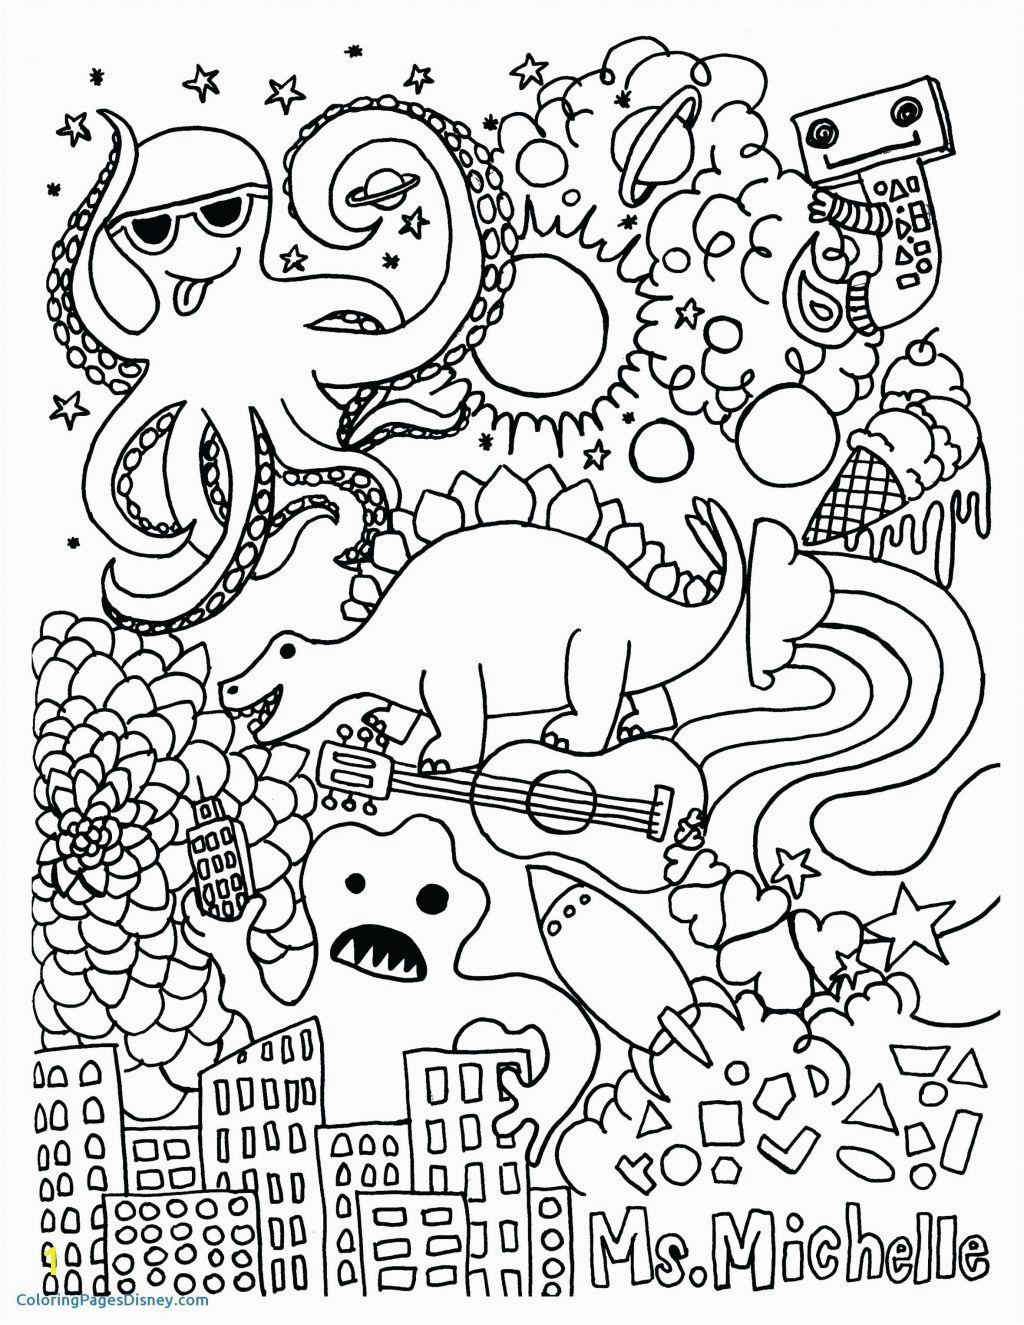 printable mindful coloring pages unique color pages color pages super hero squad coloring of printable mindful coloring pages